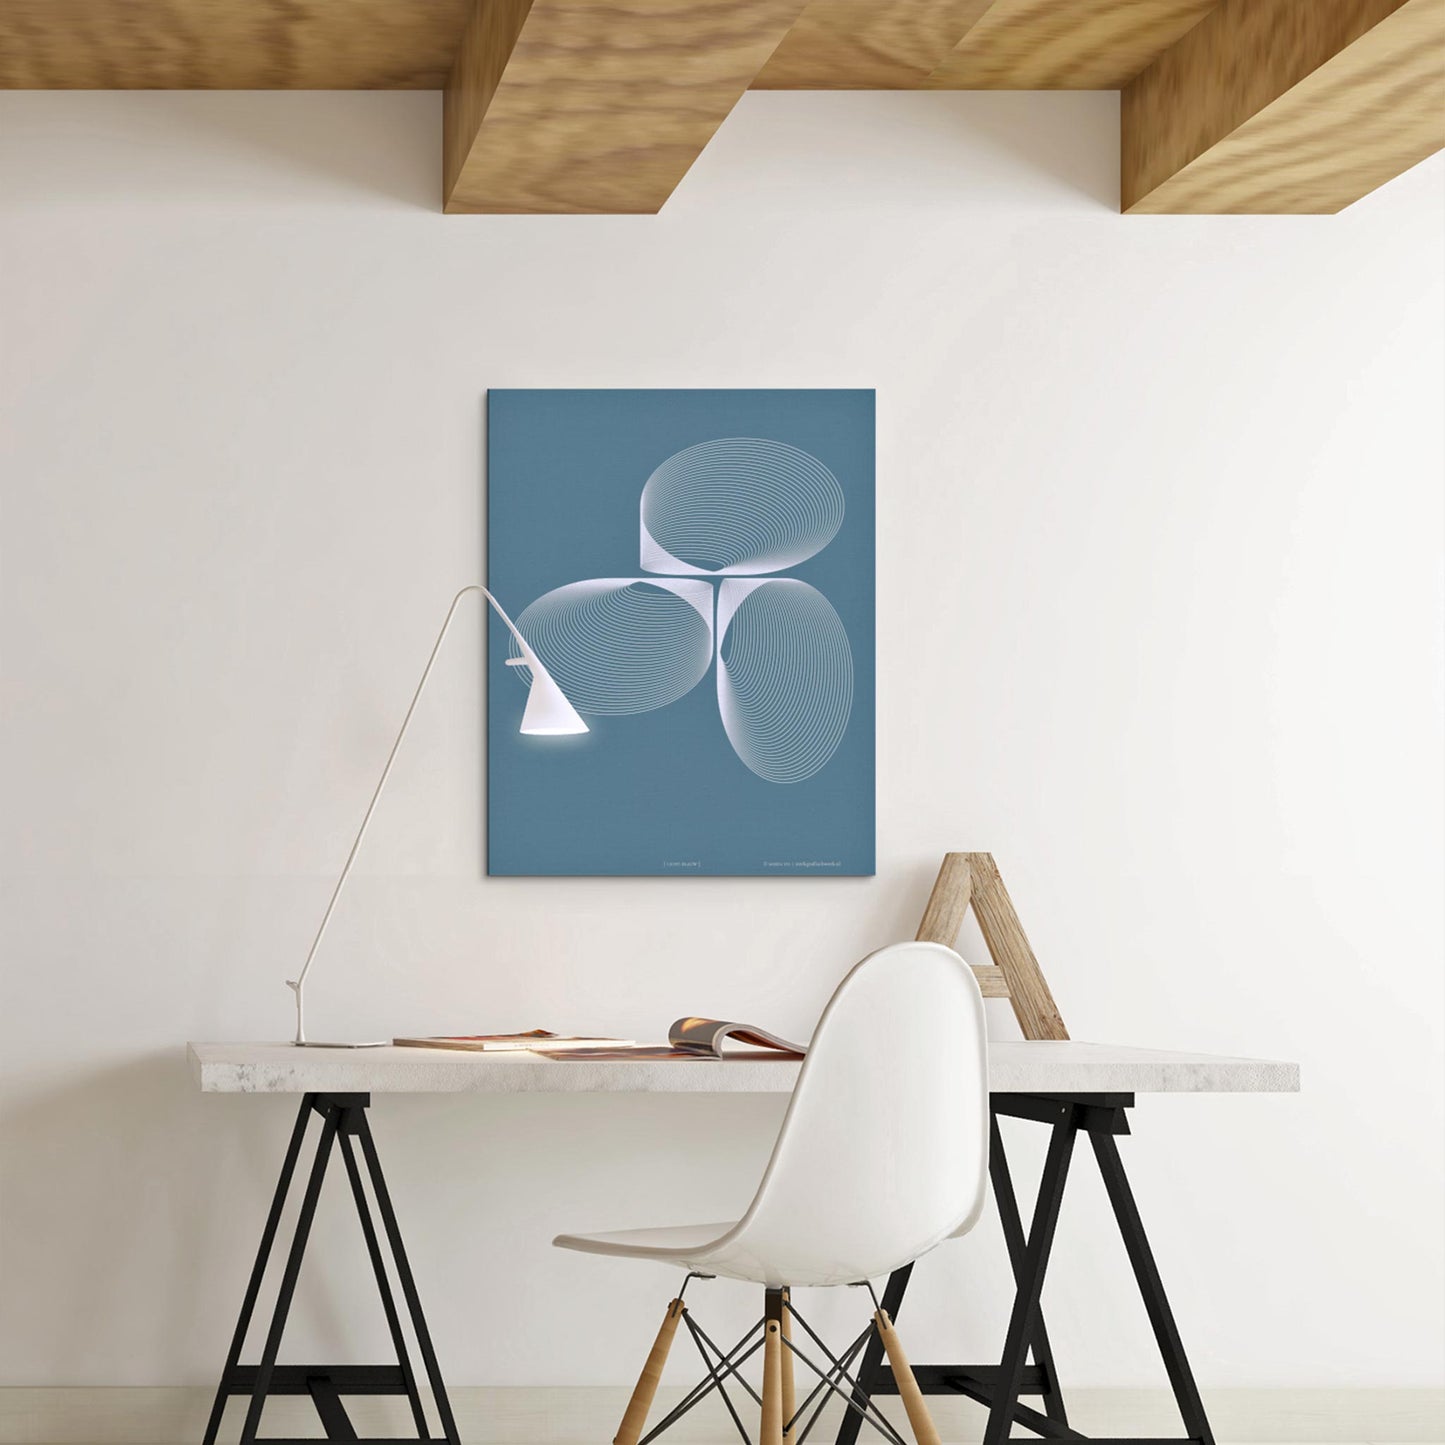 Productafbeelding, poster "licht-blauw", foto impressie 1, boven een bureau in een werkruimte, in een interieur